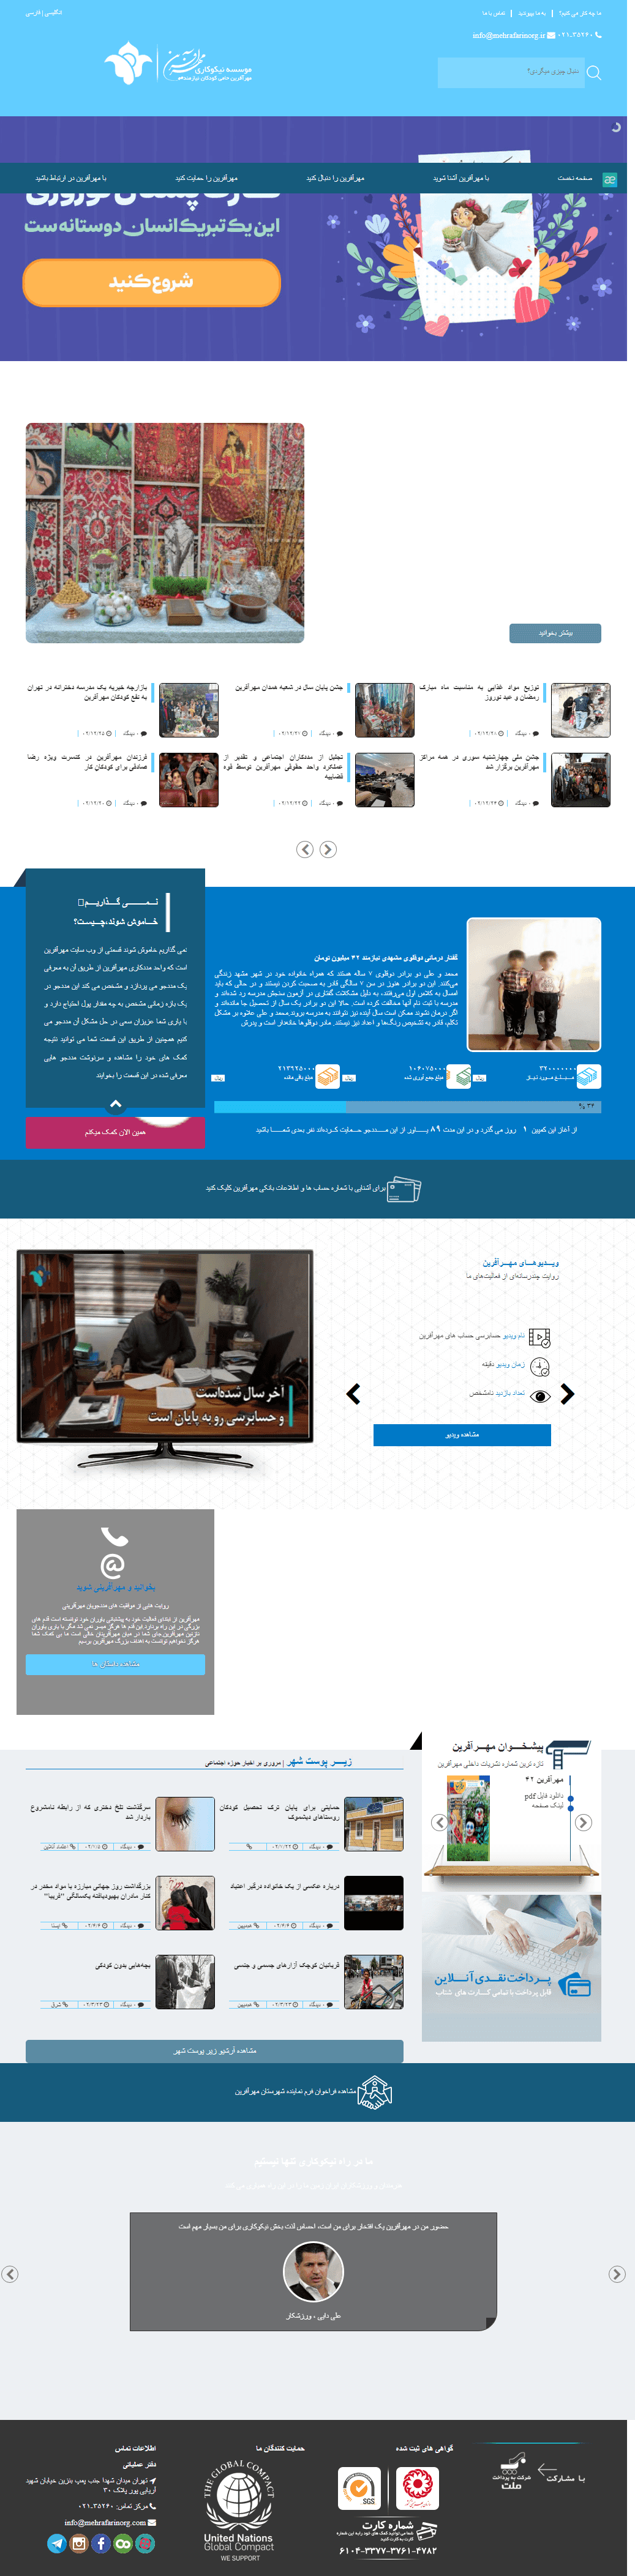 Mehrafarin website screen shot